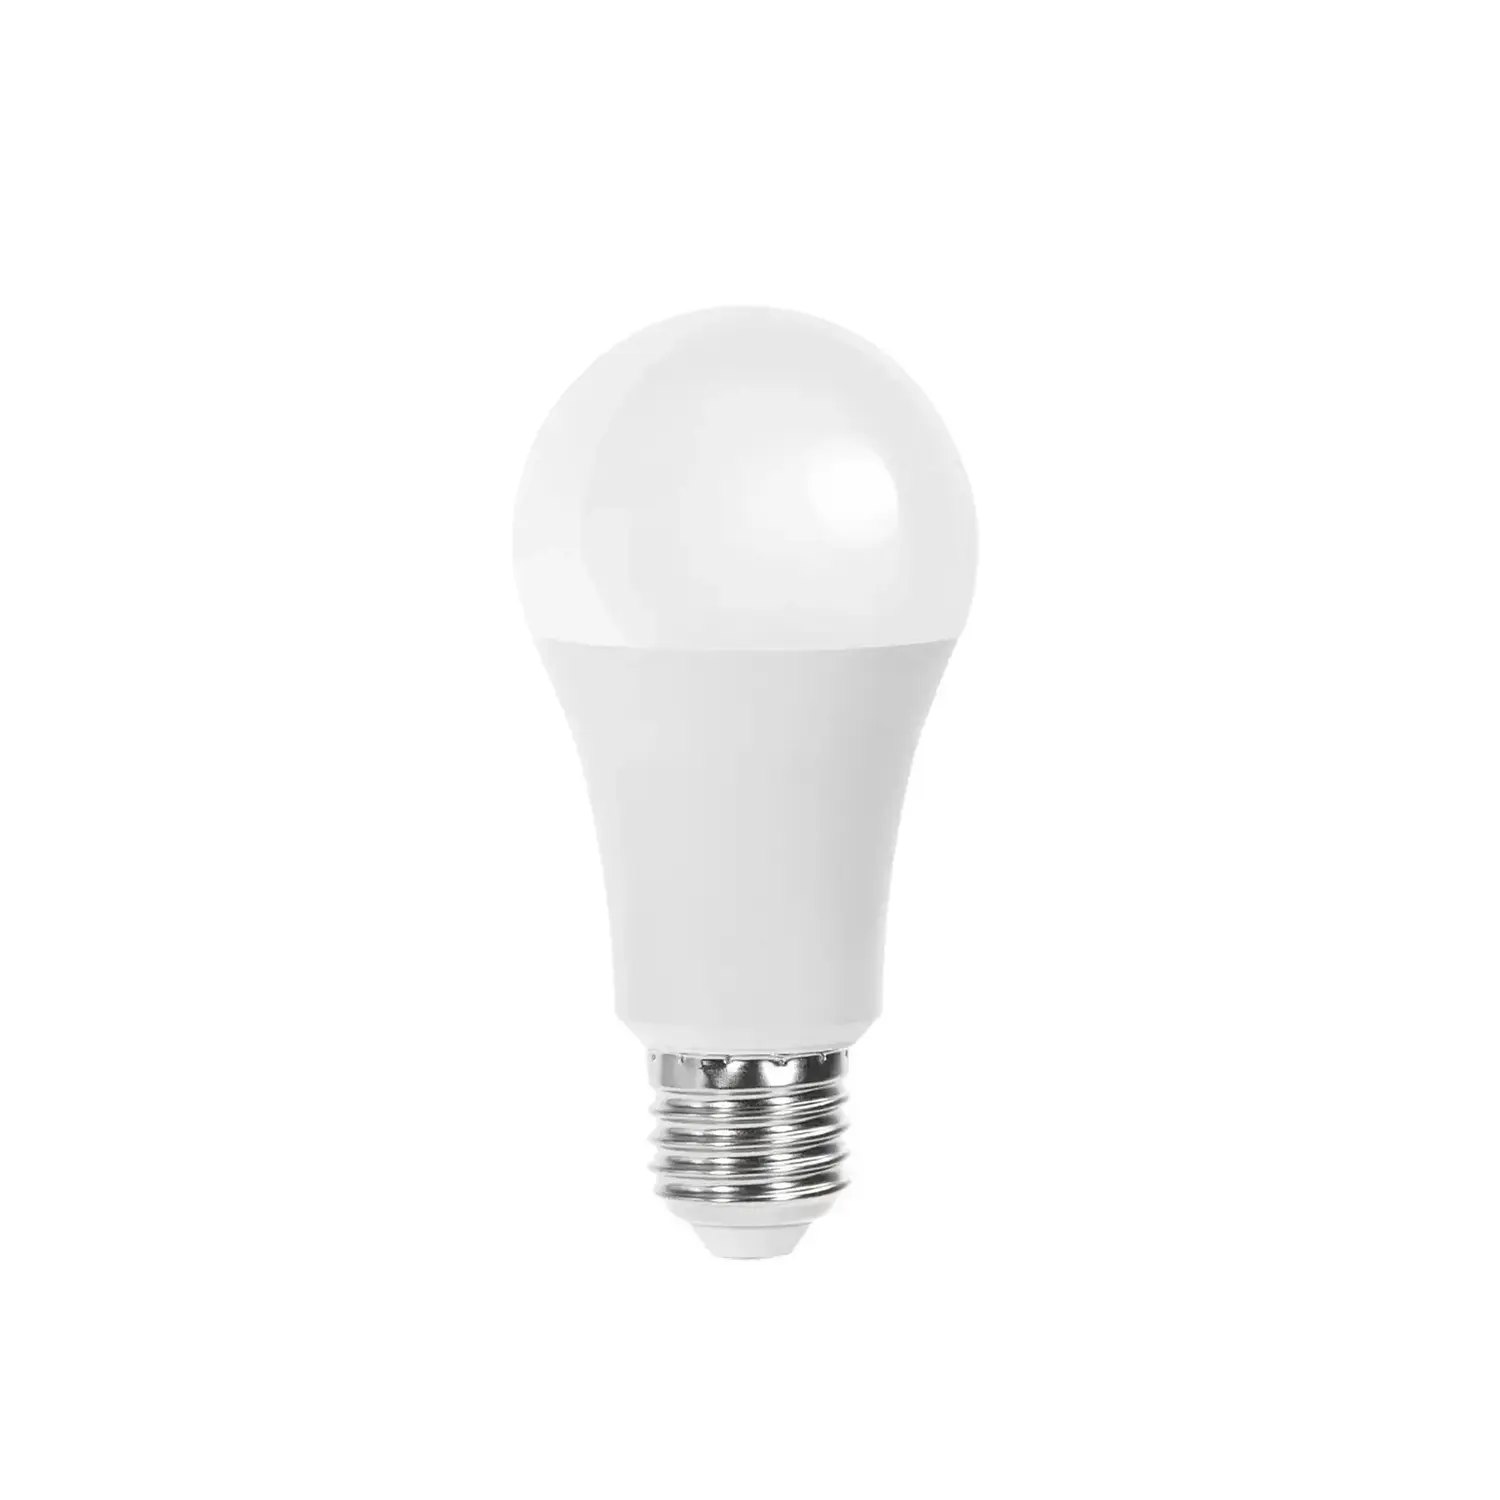 immagine del prodotto lampadina led A60 bulbo classico e27 17 watt bianco freddo